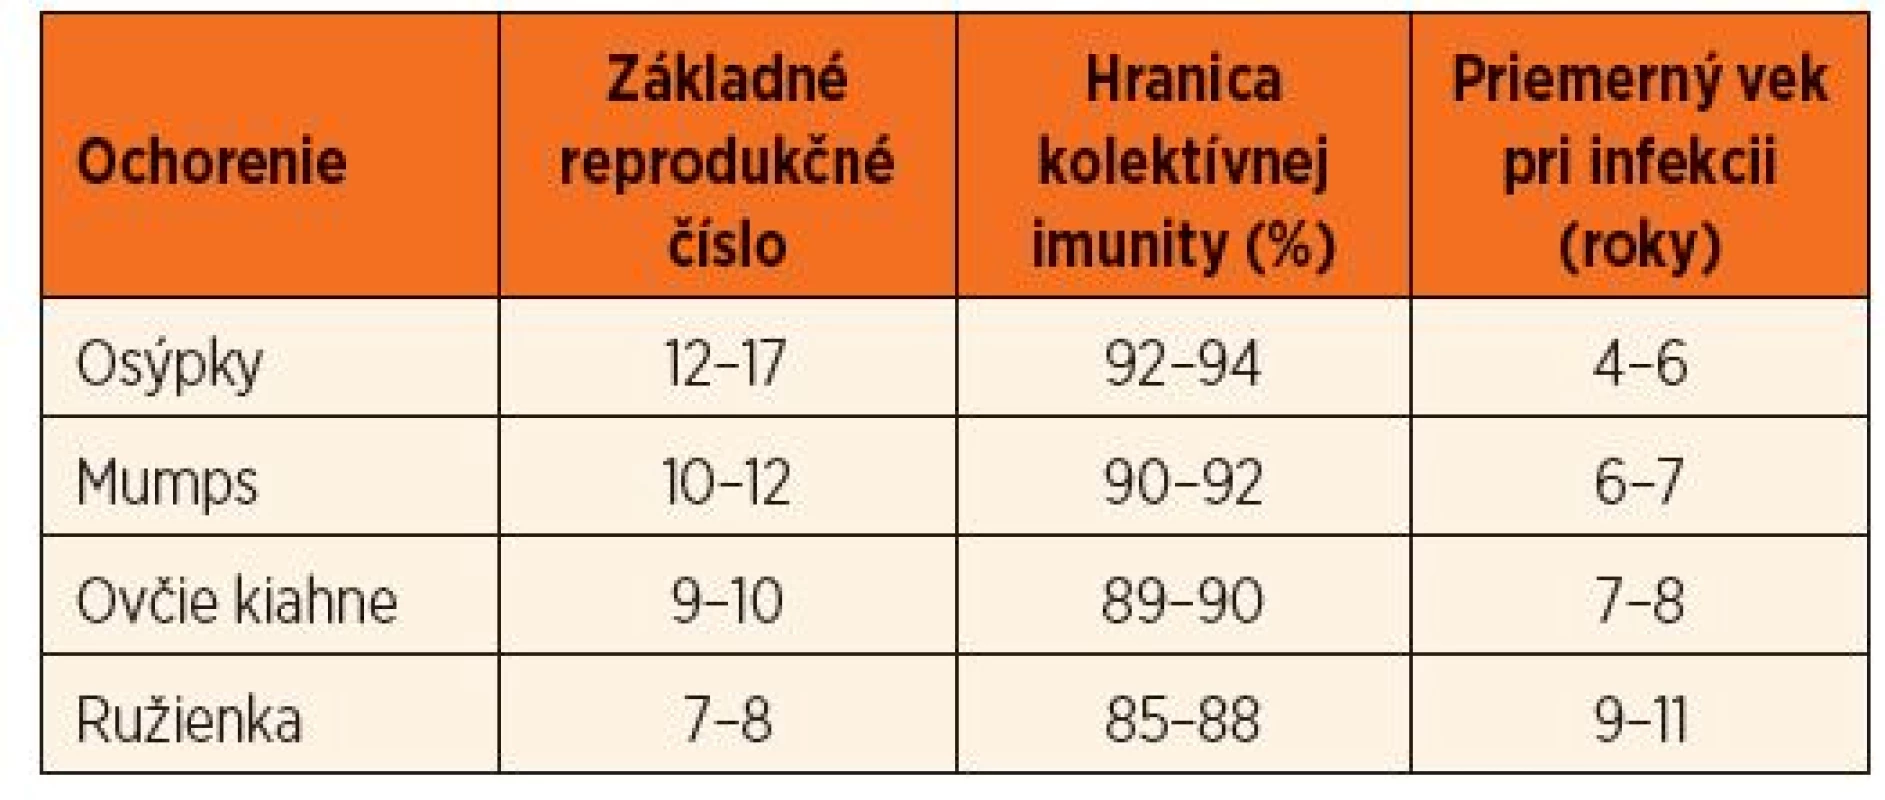 Základné reprodukčné číslo, hranica kolektívnej imunity a priemerný vek pri infekcii pre vybrané ochorenia detského veku [11].